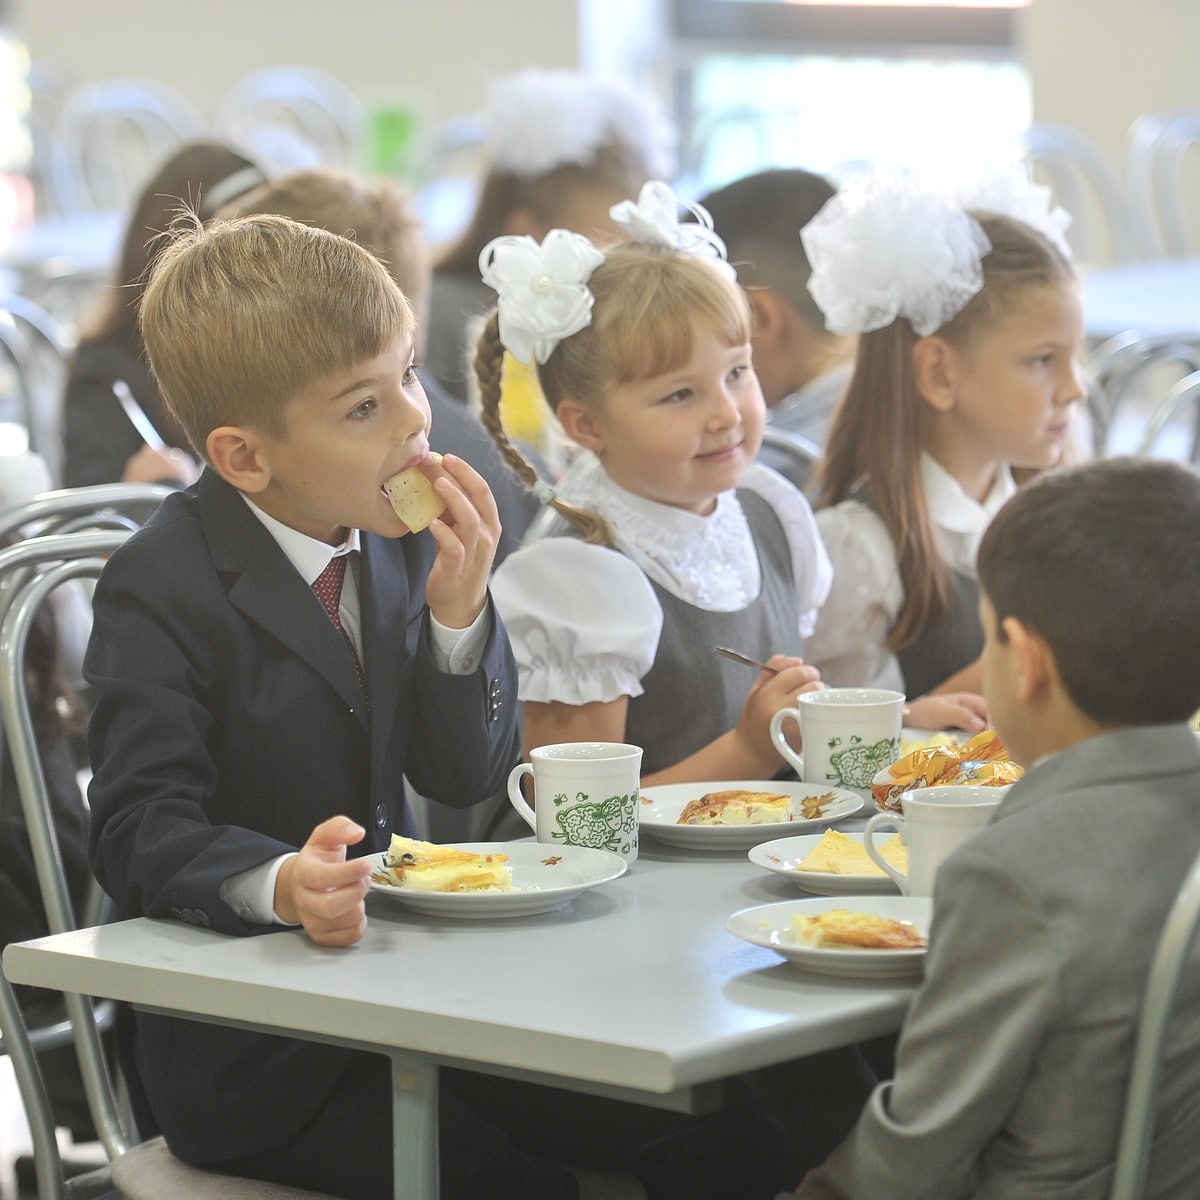 В столовой обедают а учеников б учеников сидят за большими столами